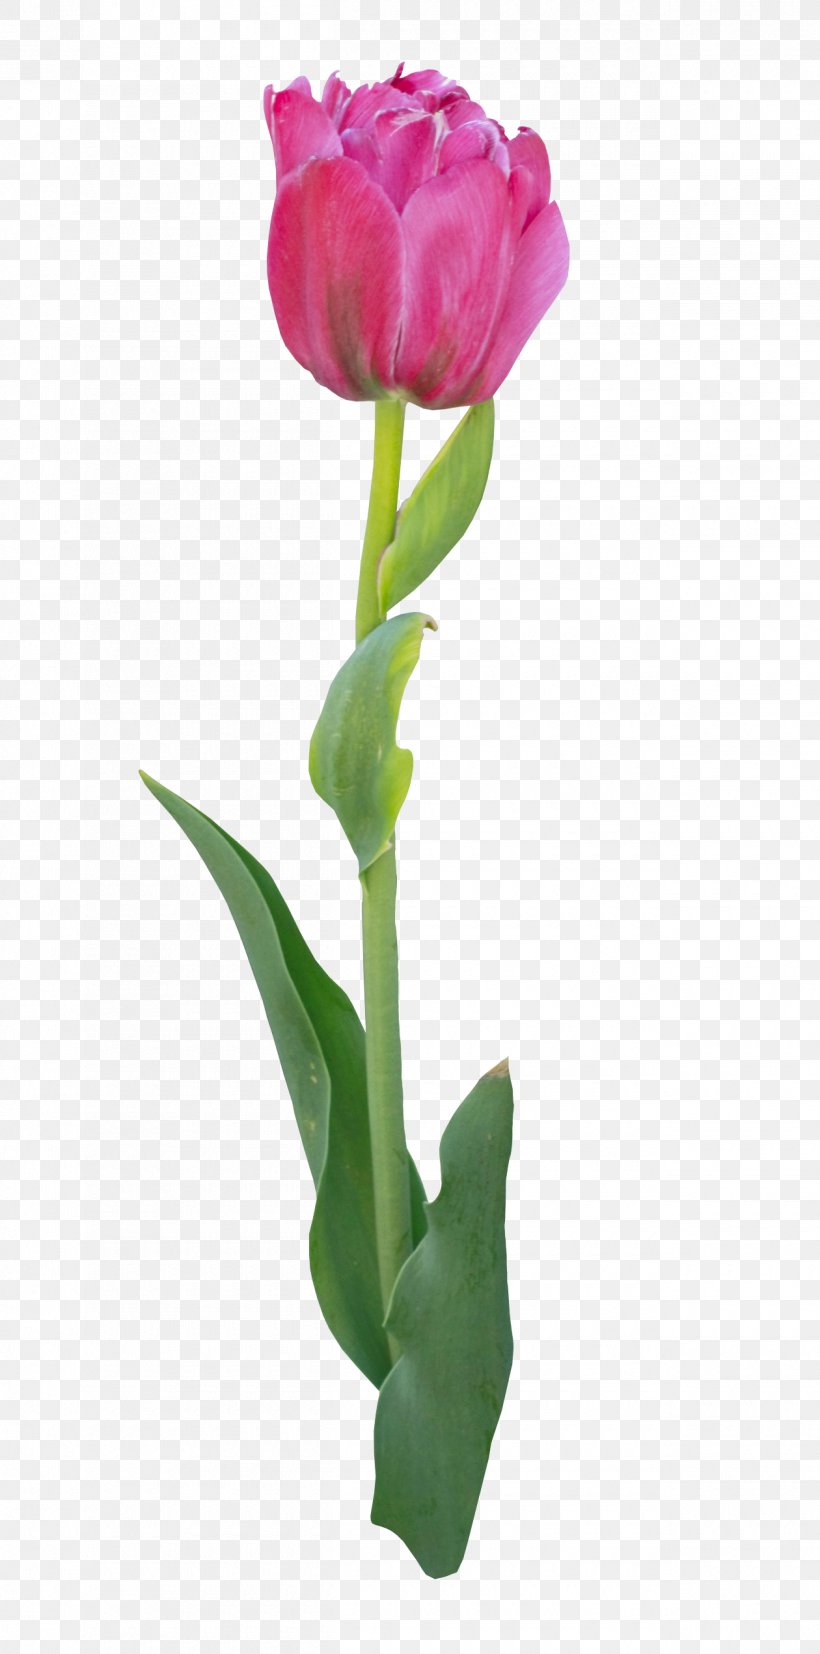 Tulip Flower Bouquet Clip Art, PNG, 1260x2543px, Tulip, Bud, Color, Cut Flowers, Digital Image Download Free